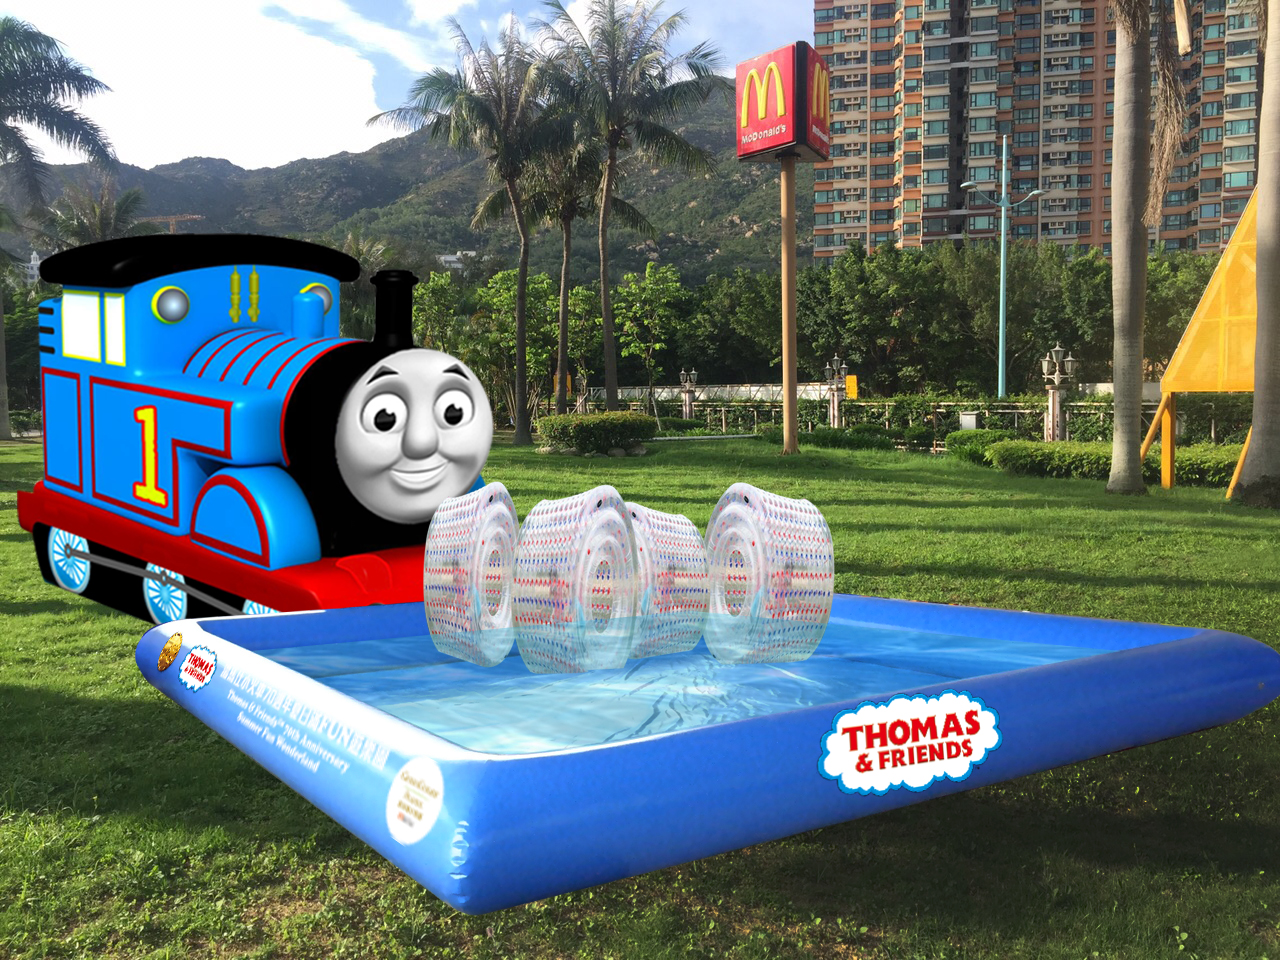 「夏日滿FUN遊樂園」特設全港最長20米Thomas & Friends主題充氣水池，池中放置大長型飄卷，可讓家長及小朋友一同入內跳躍奔馳大玩水上飄